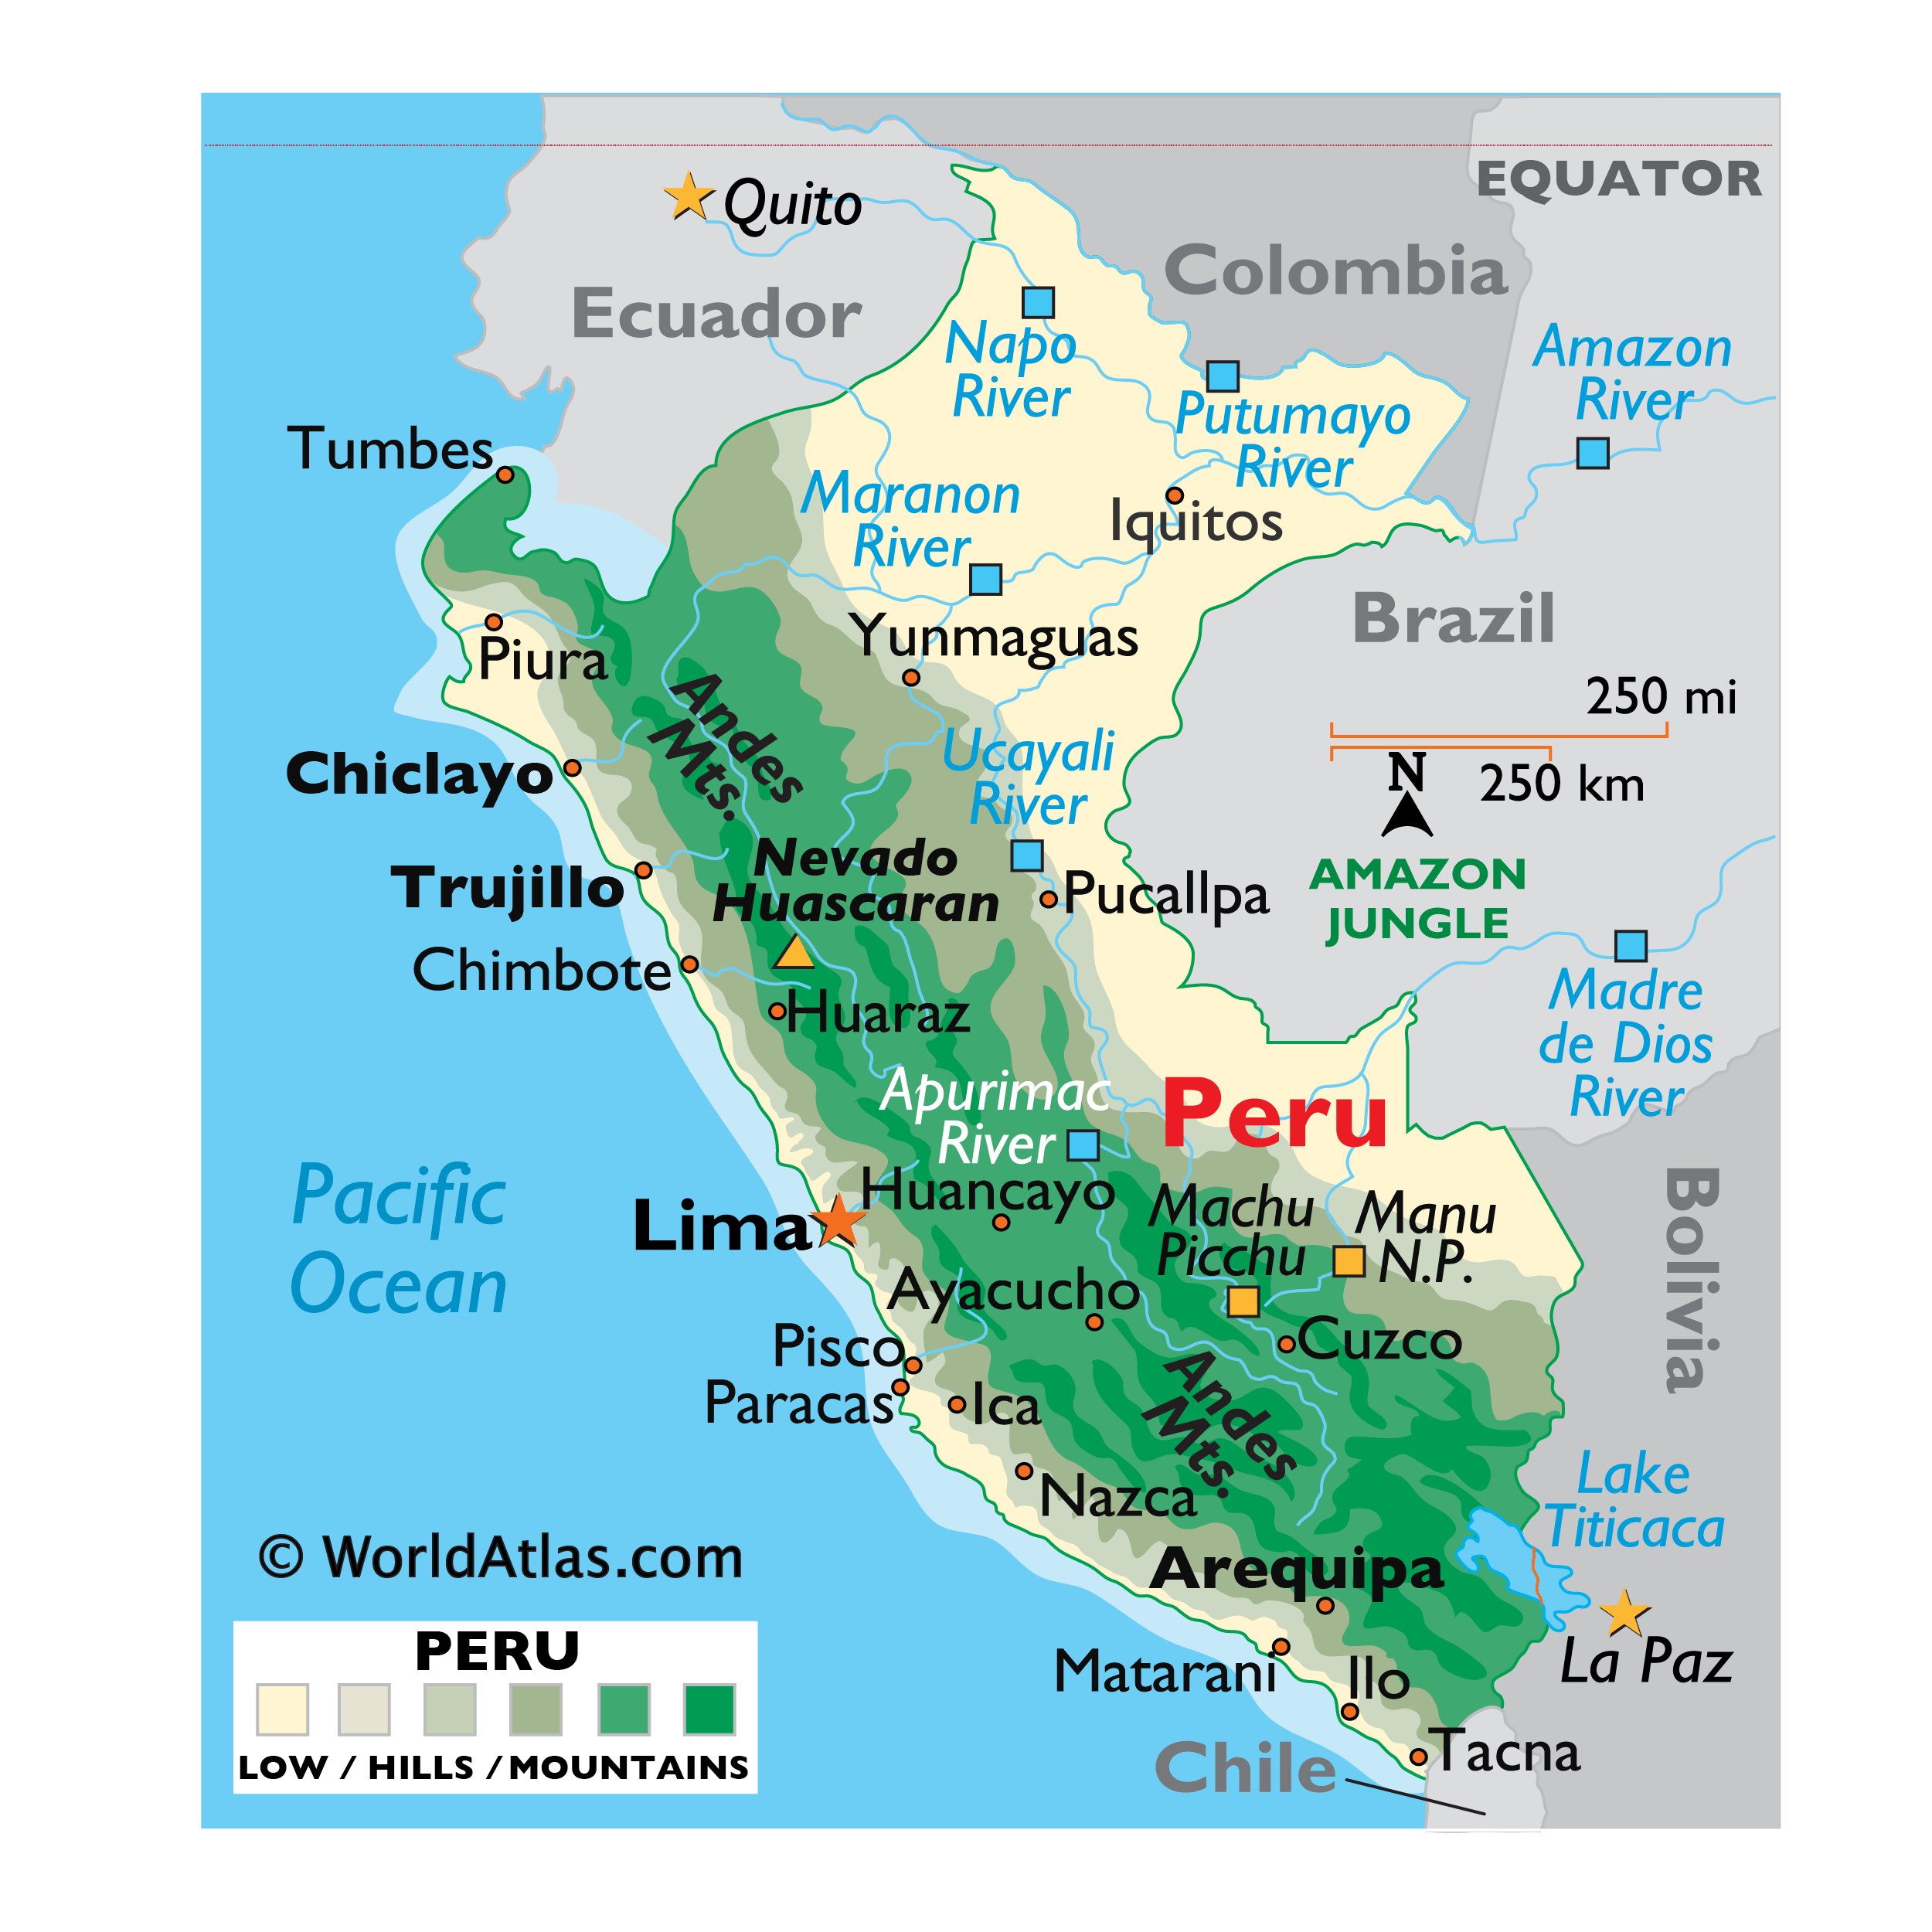 karta perua Peru Map / Geography of Peru / Map of Peru   Worldatlas.com karta perua